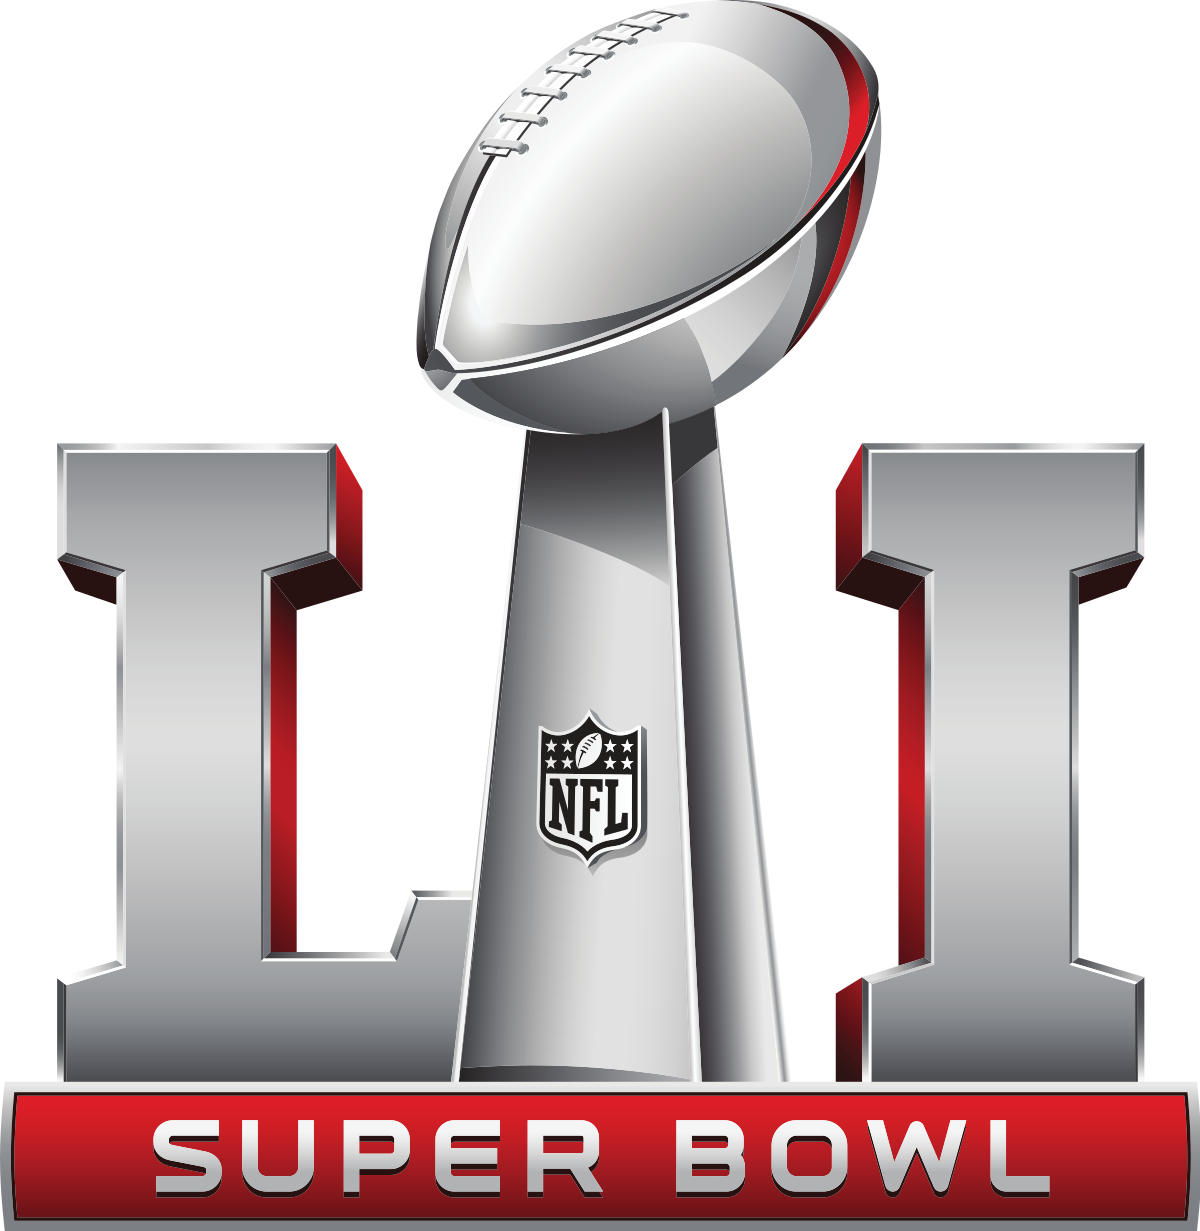 Soaked Smooth Precipice Super Bowl LI - Wikipedia